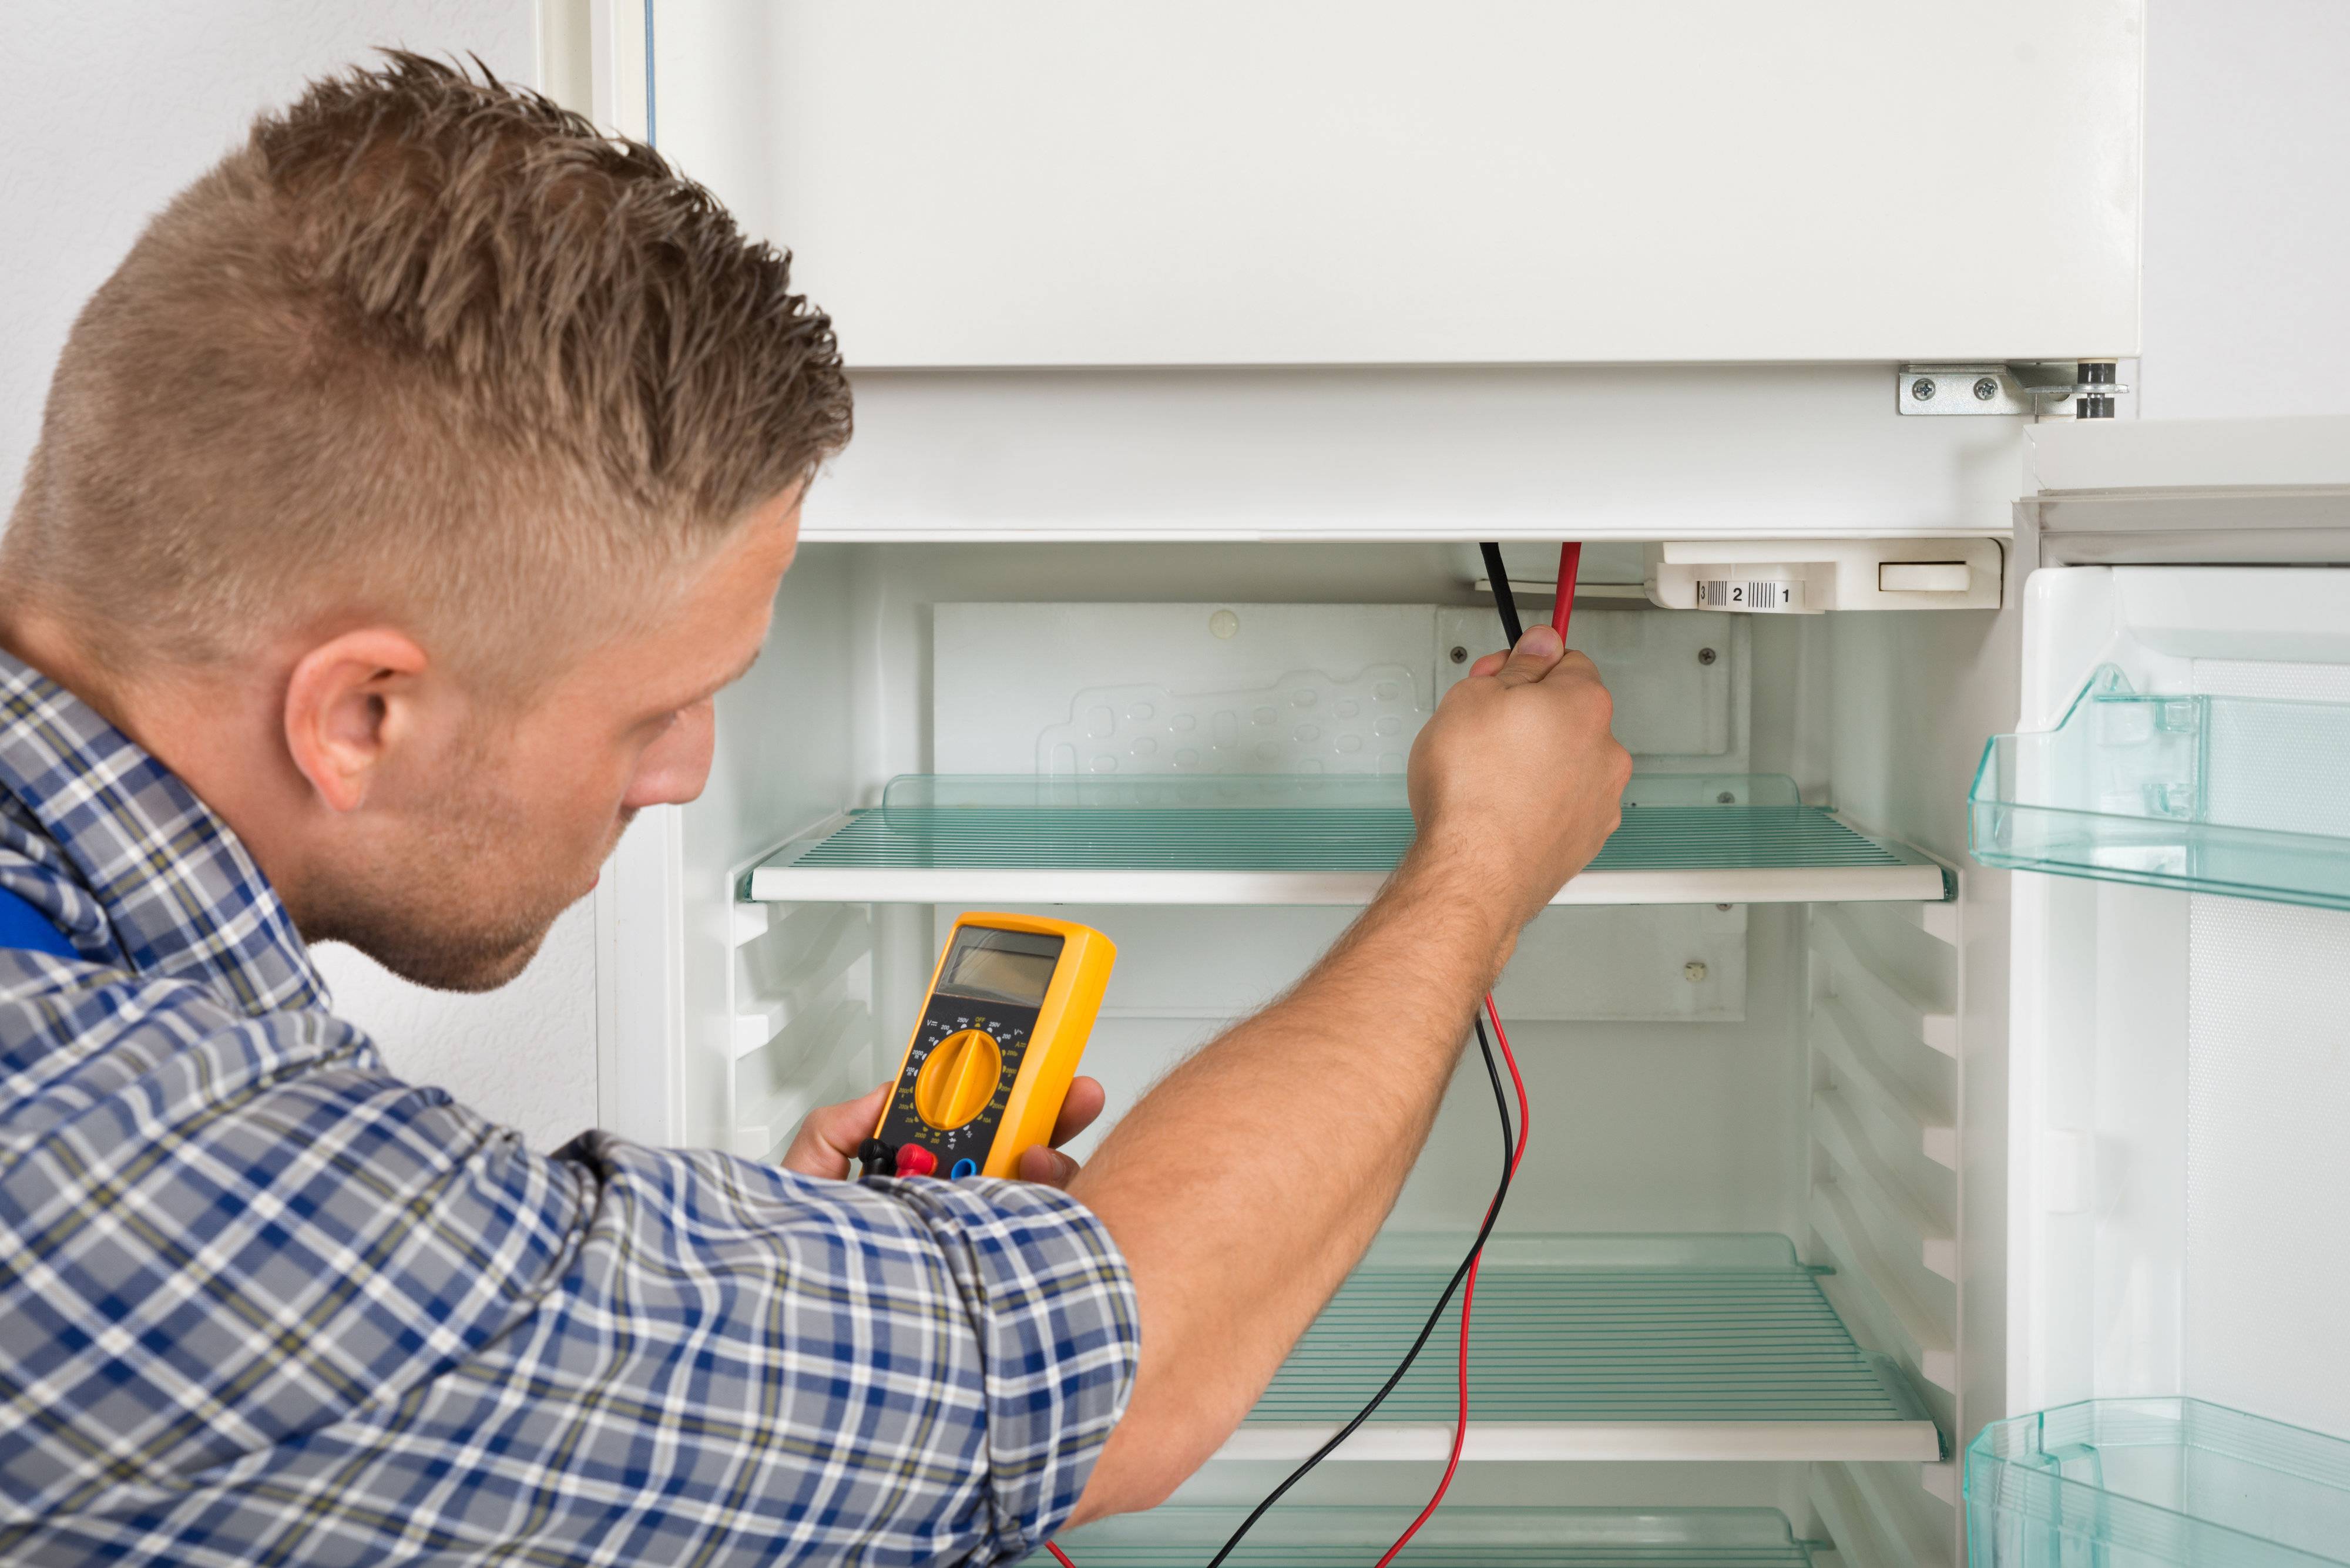 Диагностика холодильника своими руками: как самостоятельно провести ремонт поломок и определить неисправность электроники, компрессора или терморегулятора?